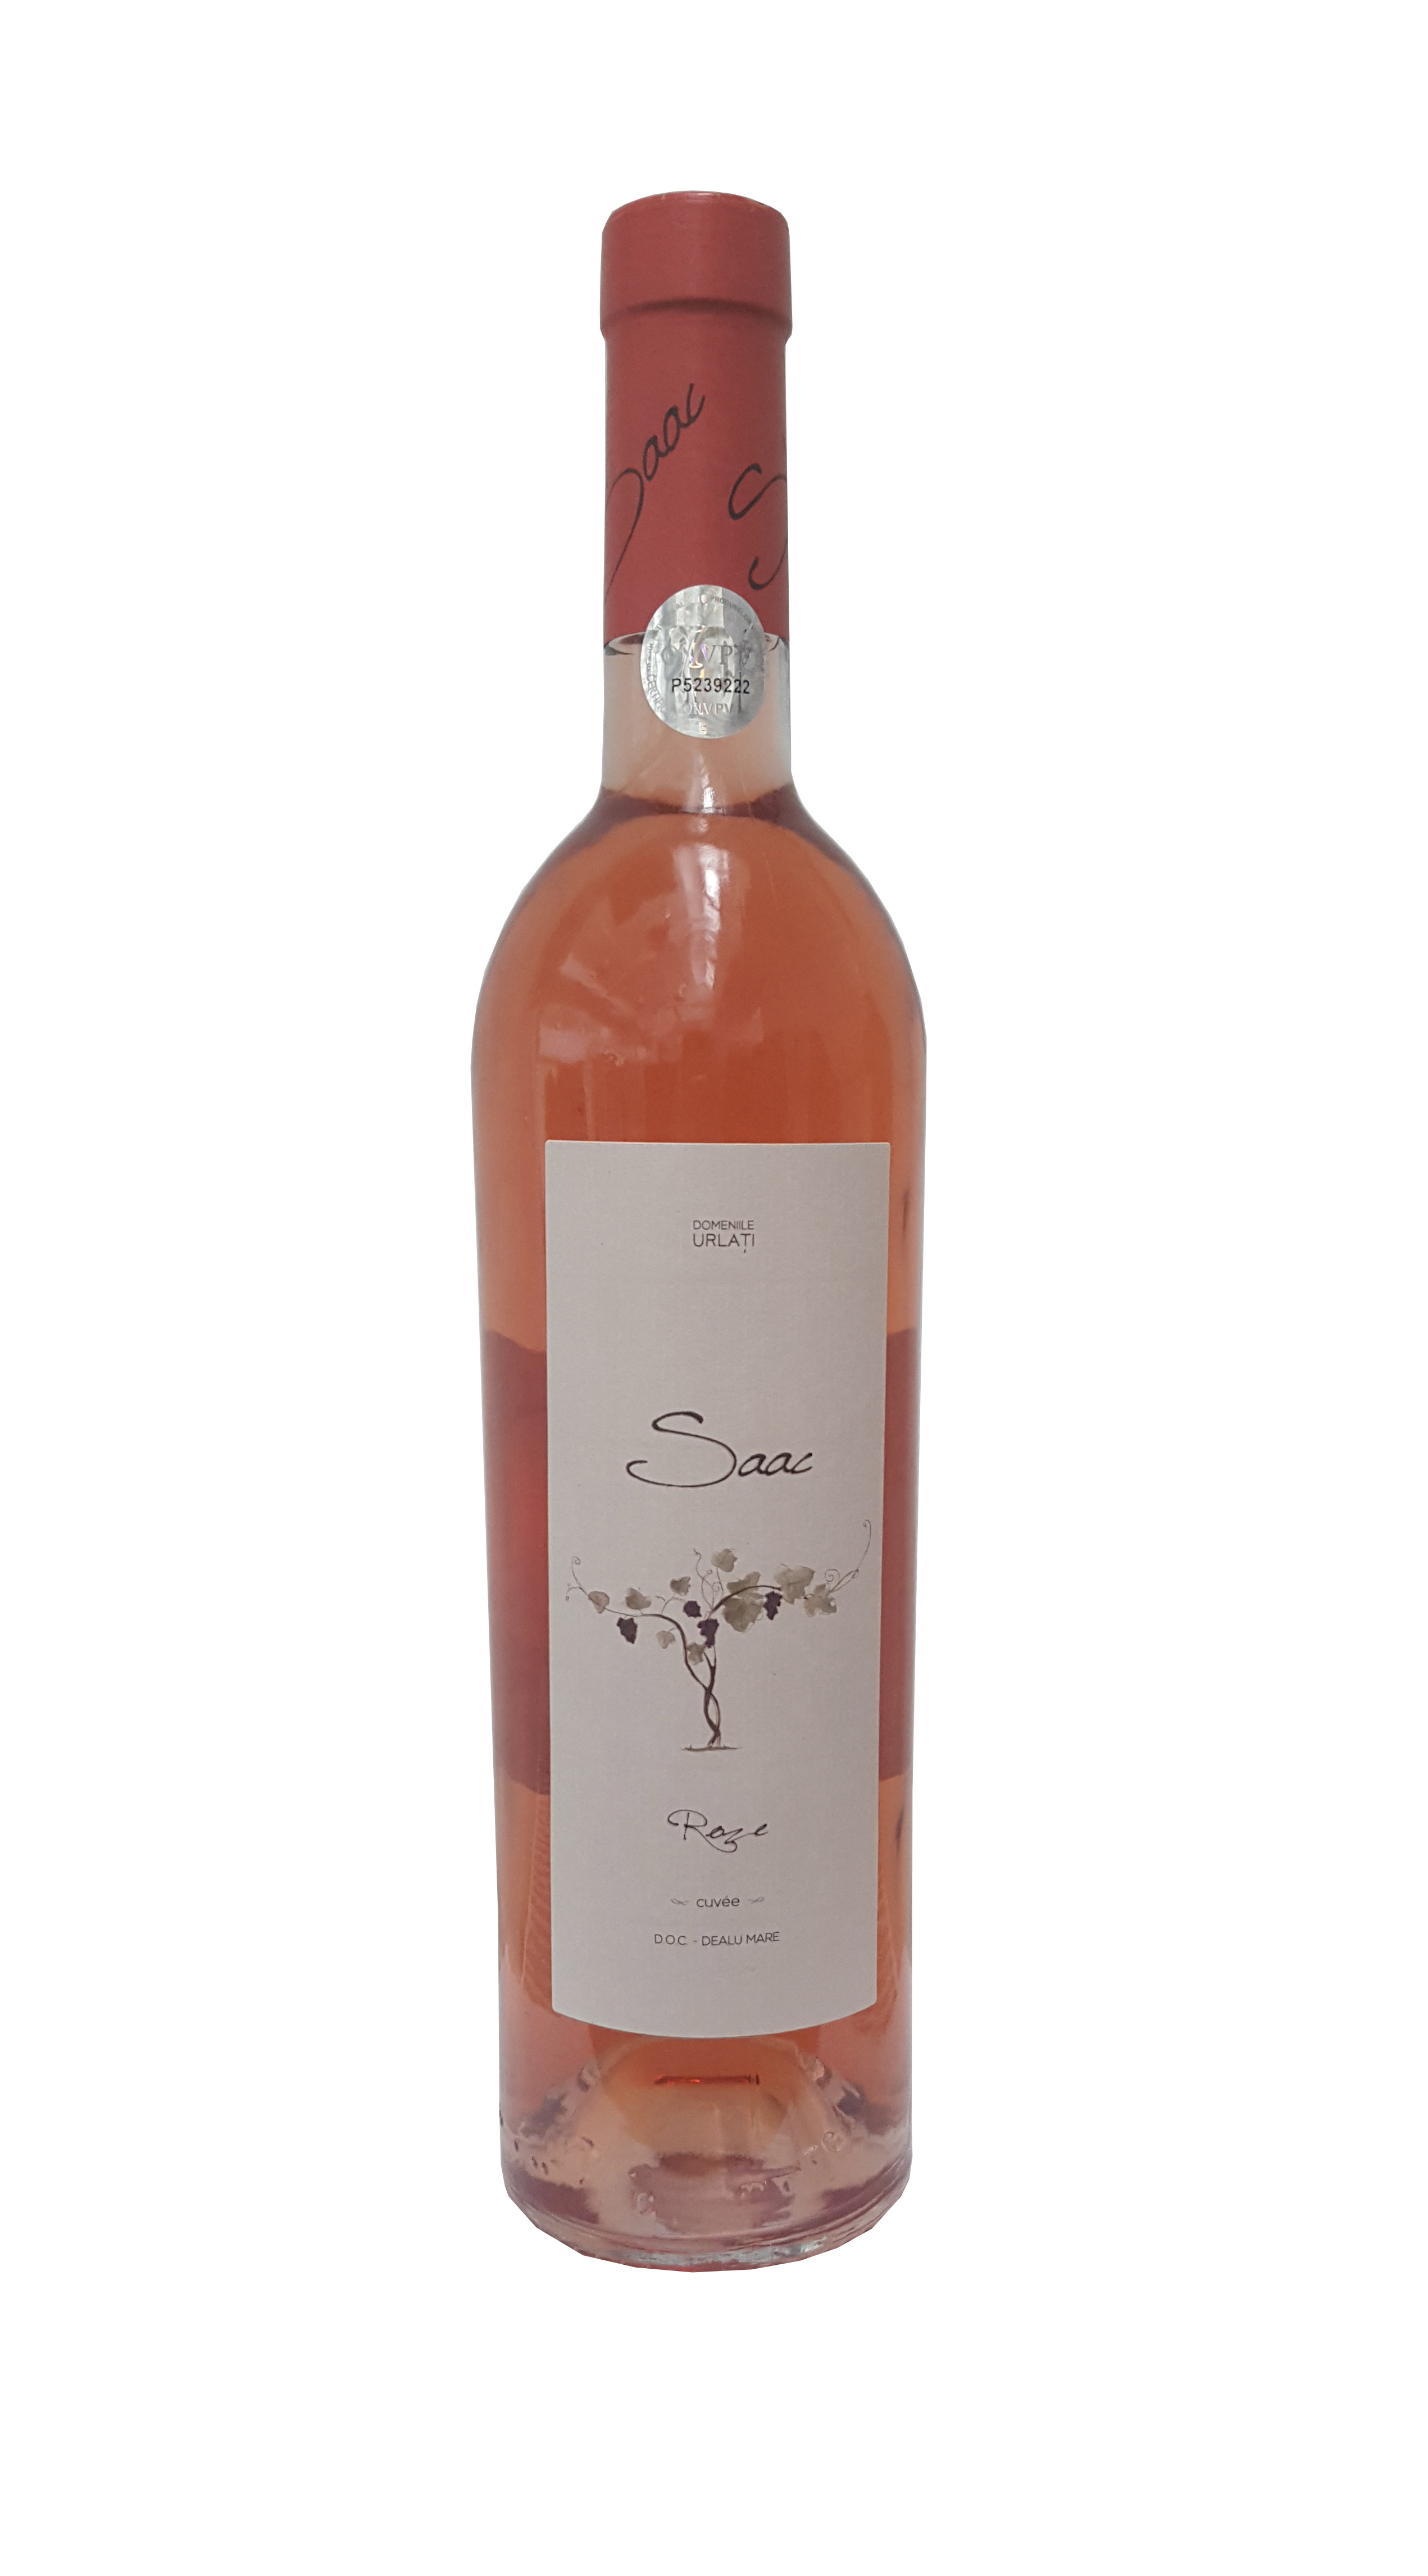  Vin rose - Dealu Mare, Domeniile Urlati, 2015, sec | Domeniile Urlati 